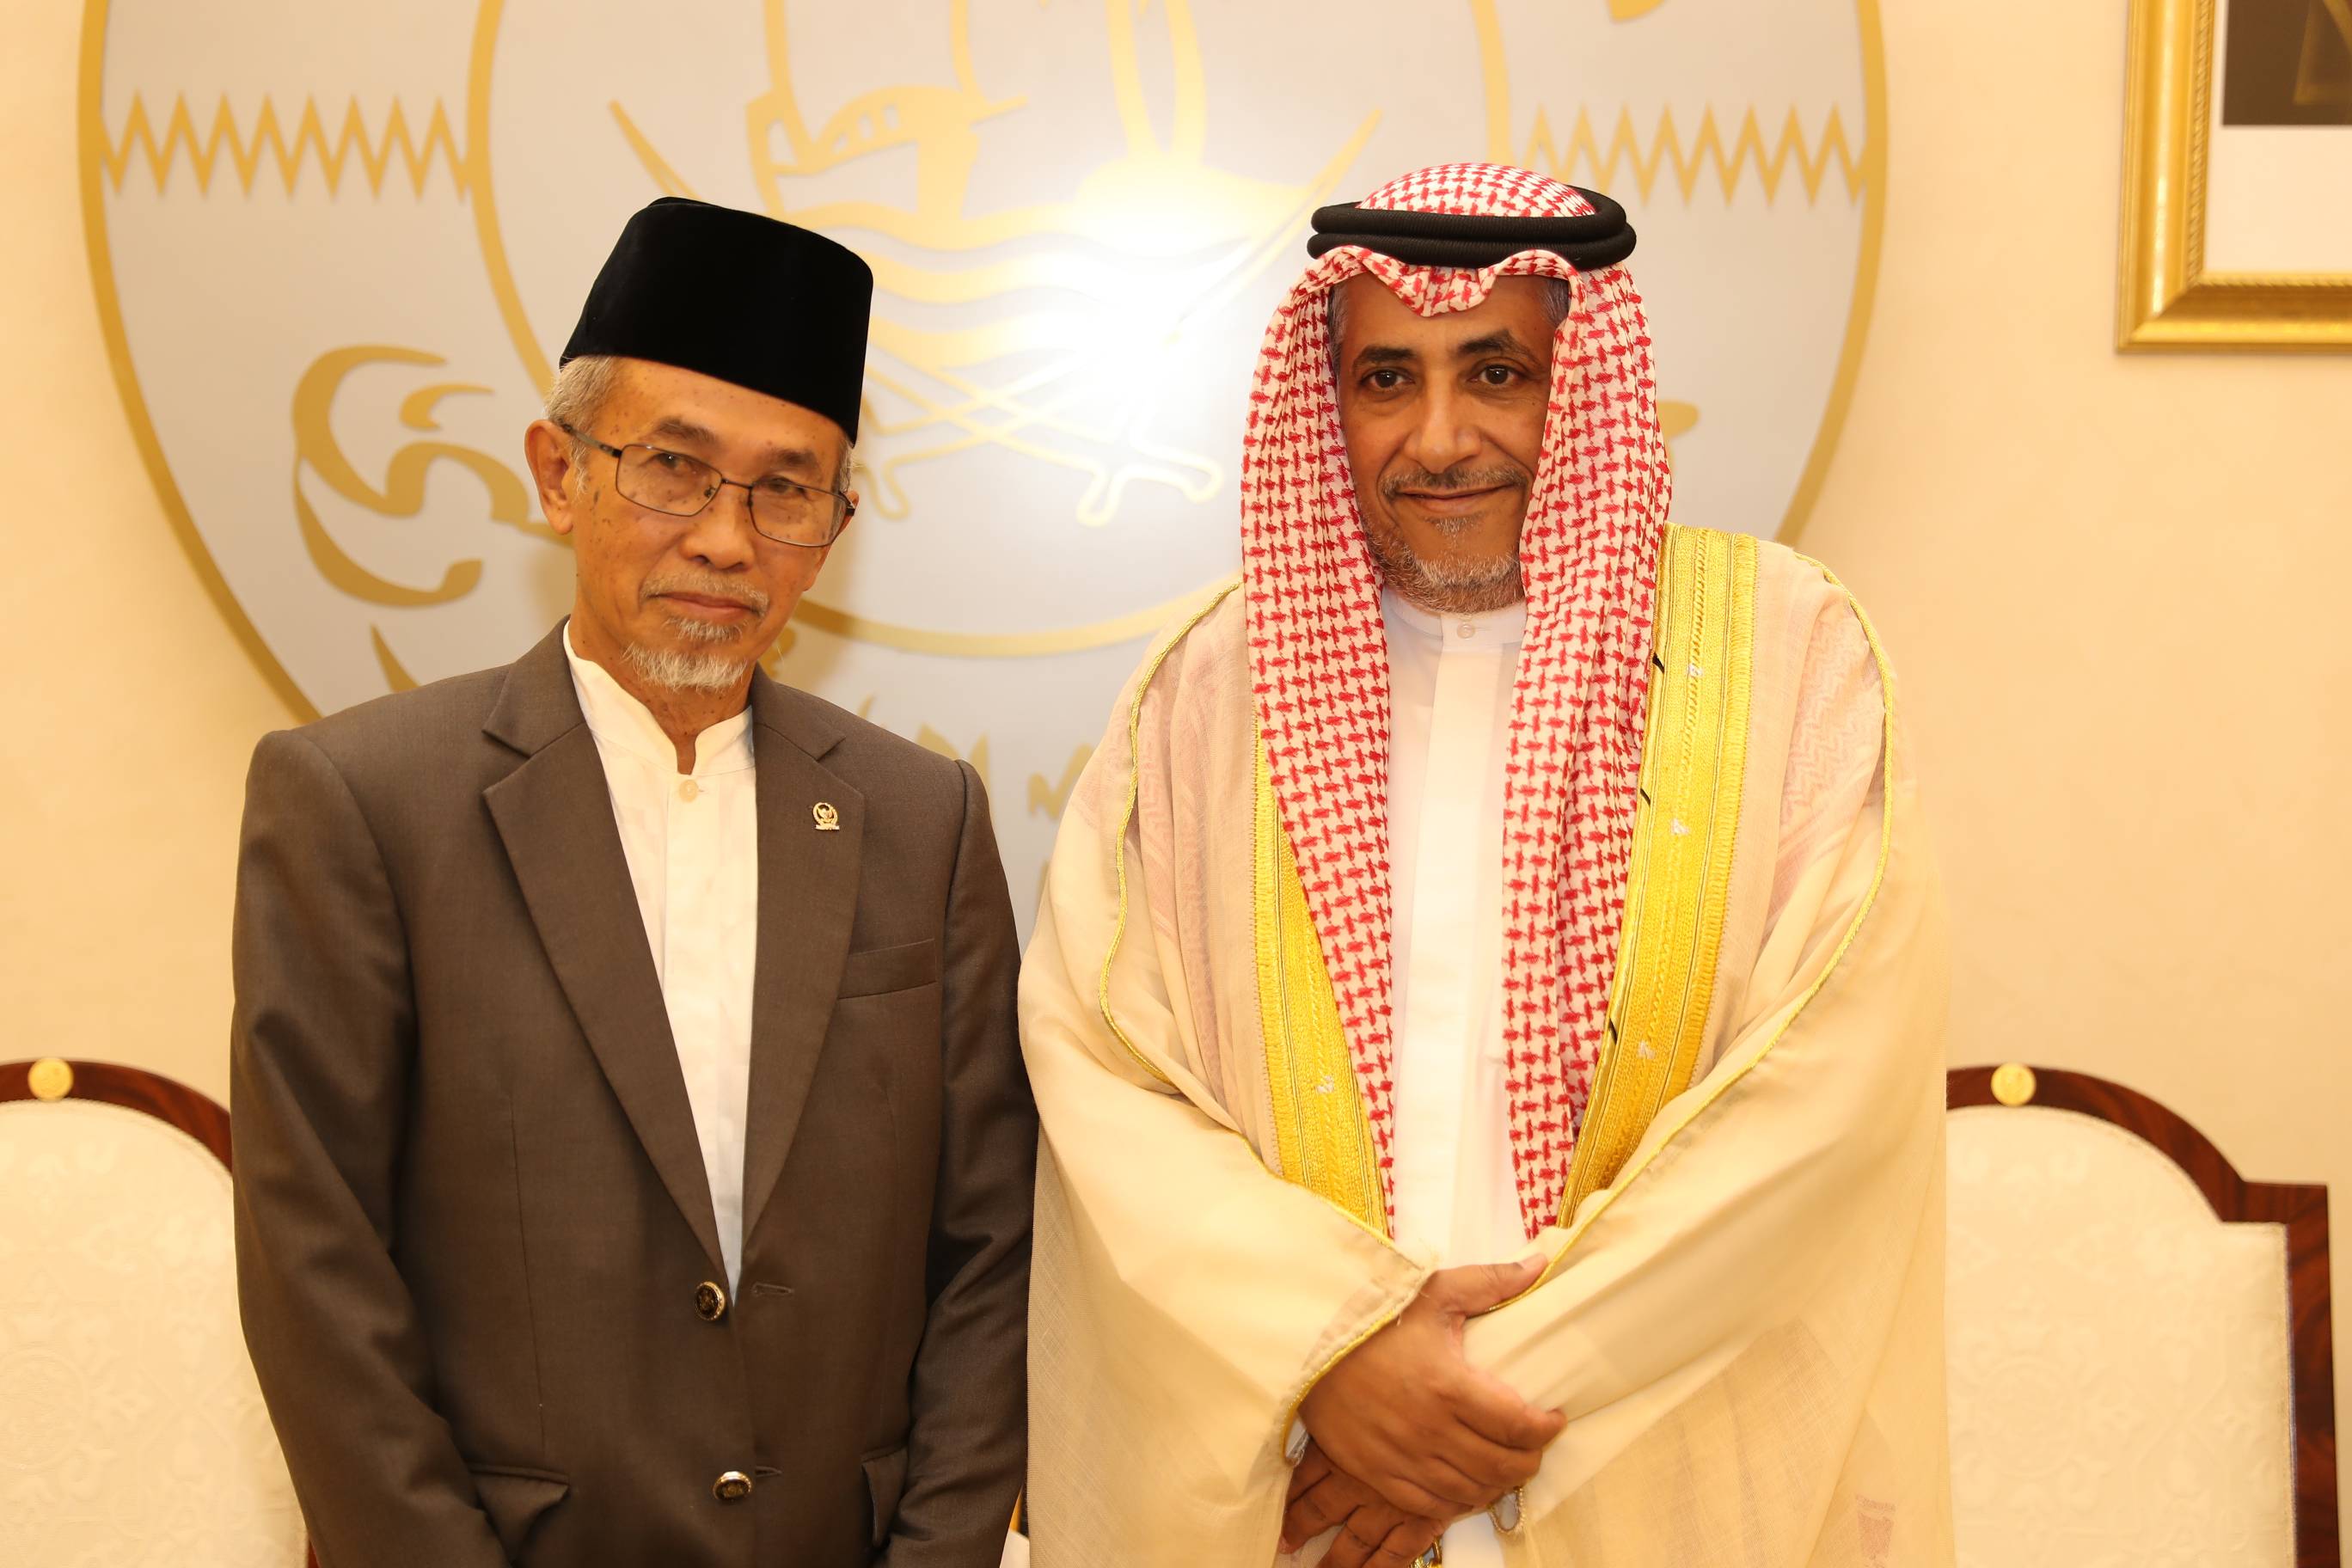 نائب رئيس مجلس الشورى يجتمع مع نائب رئيس مجلس النواب الإقليمي في إندونيسيا